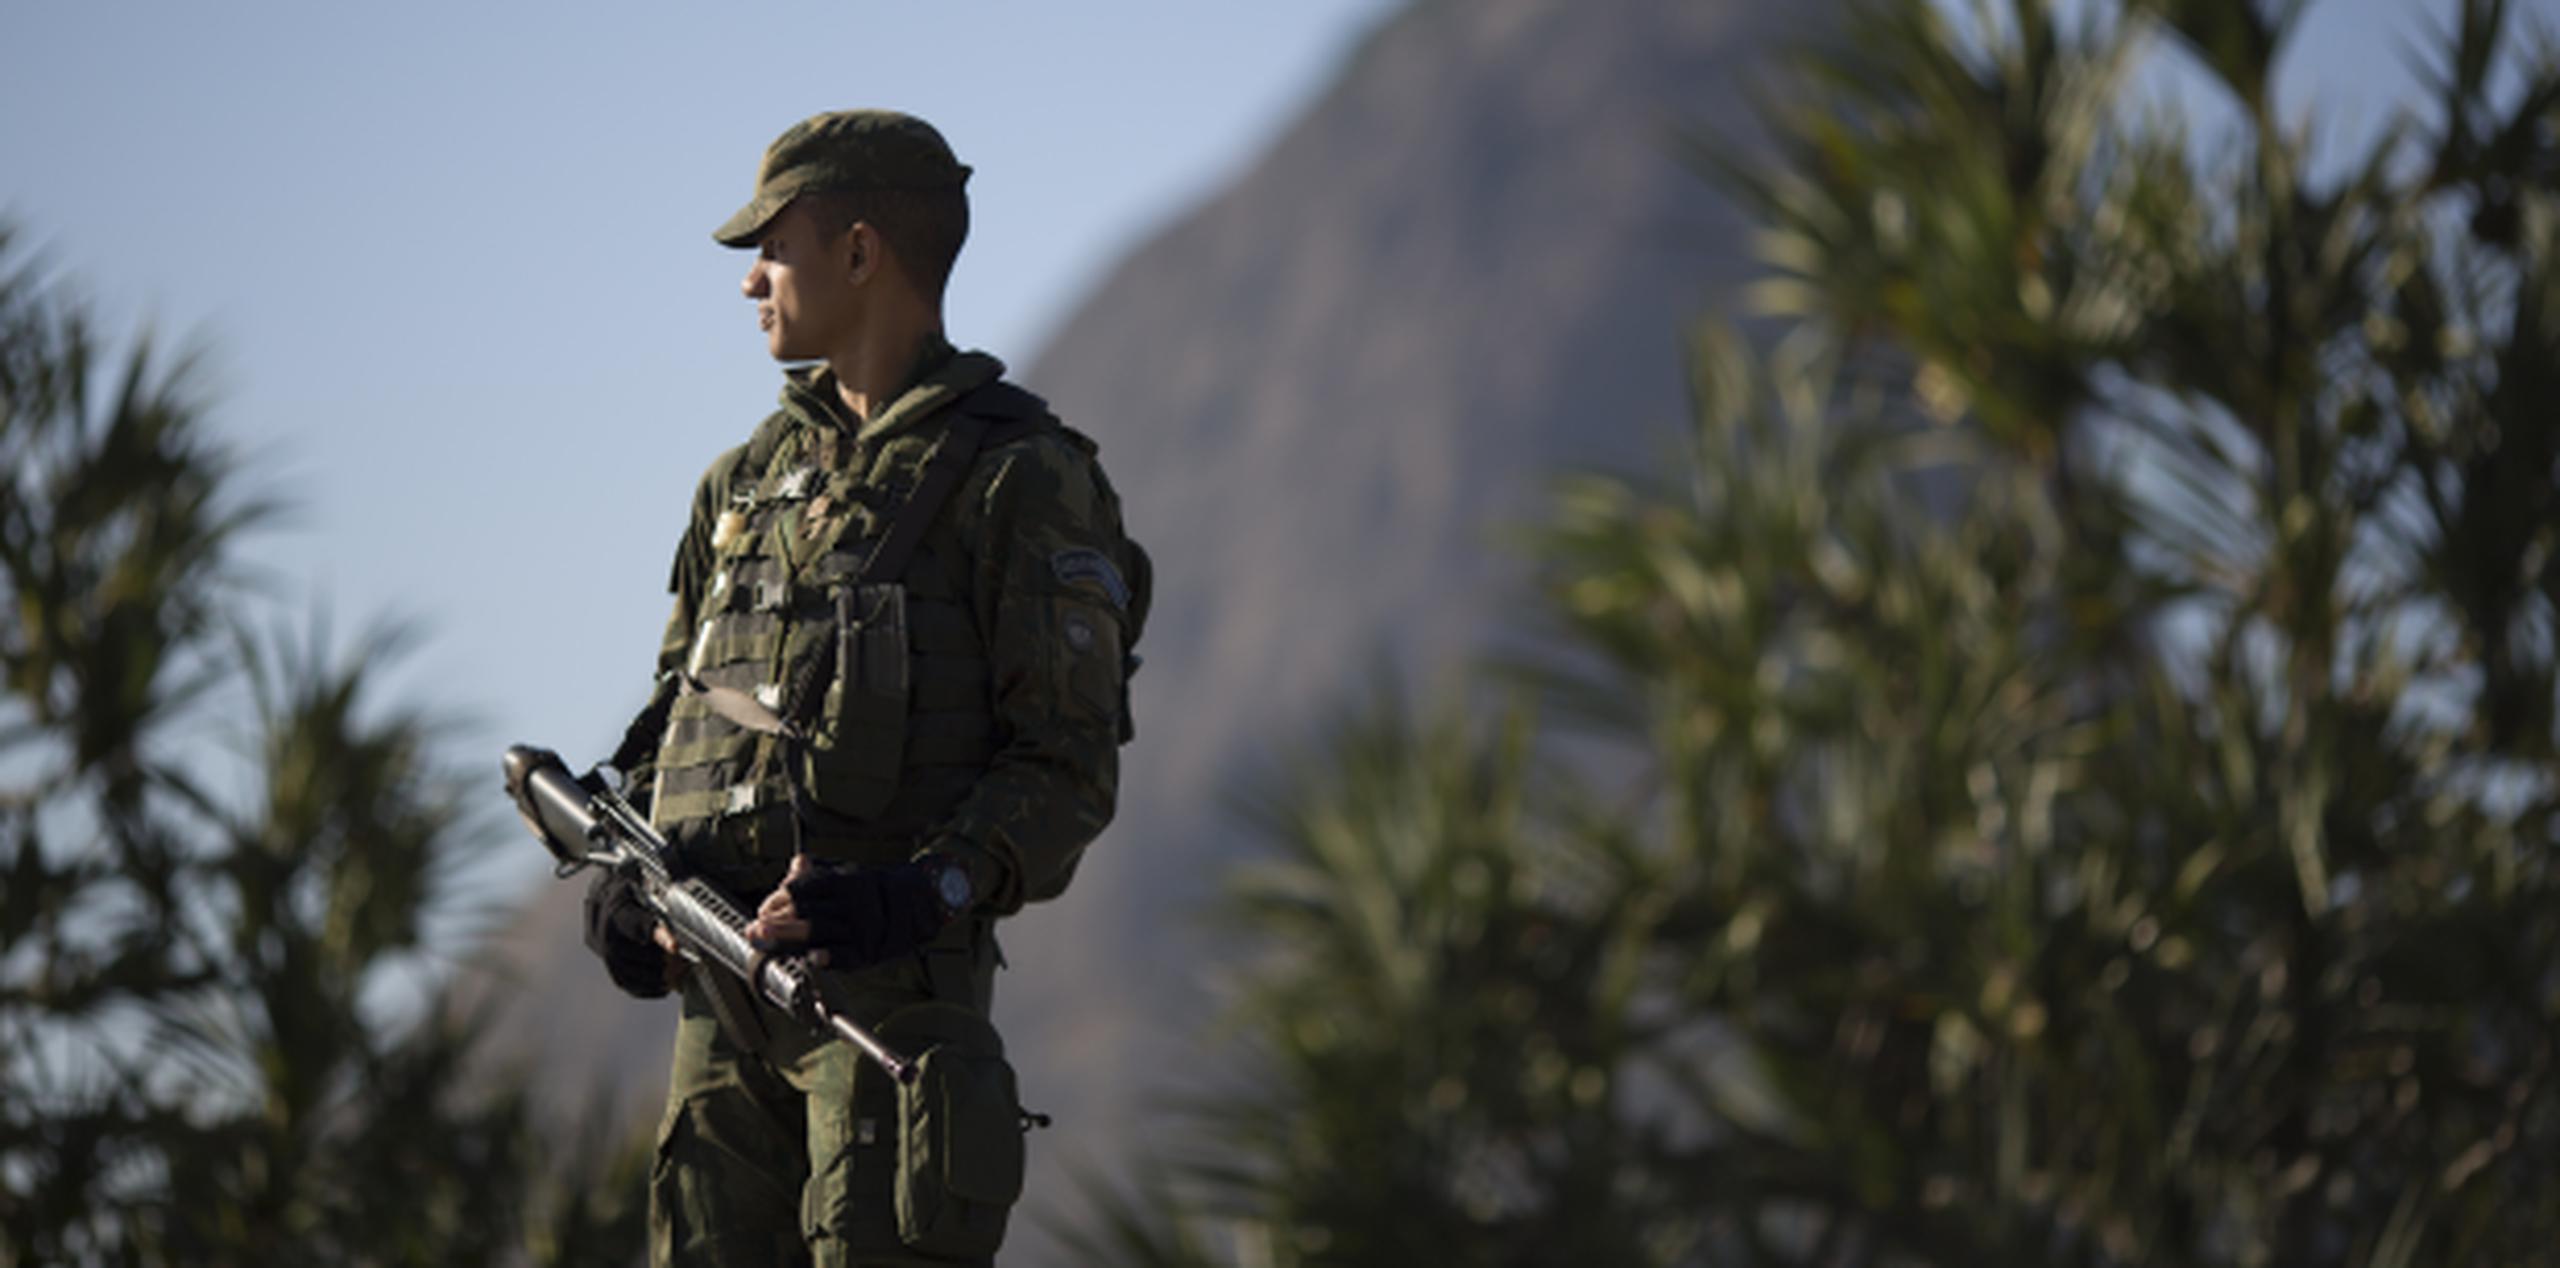 La seguridad es la mayor preocupación en los Juegos Olímpicos que comienzan el 5 de agosto en Brasil. (AP/Leo Correa)